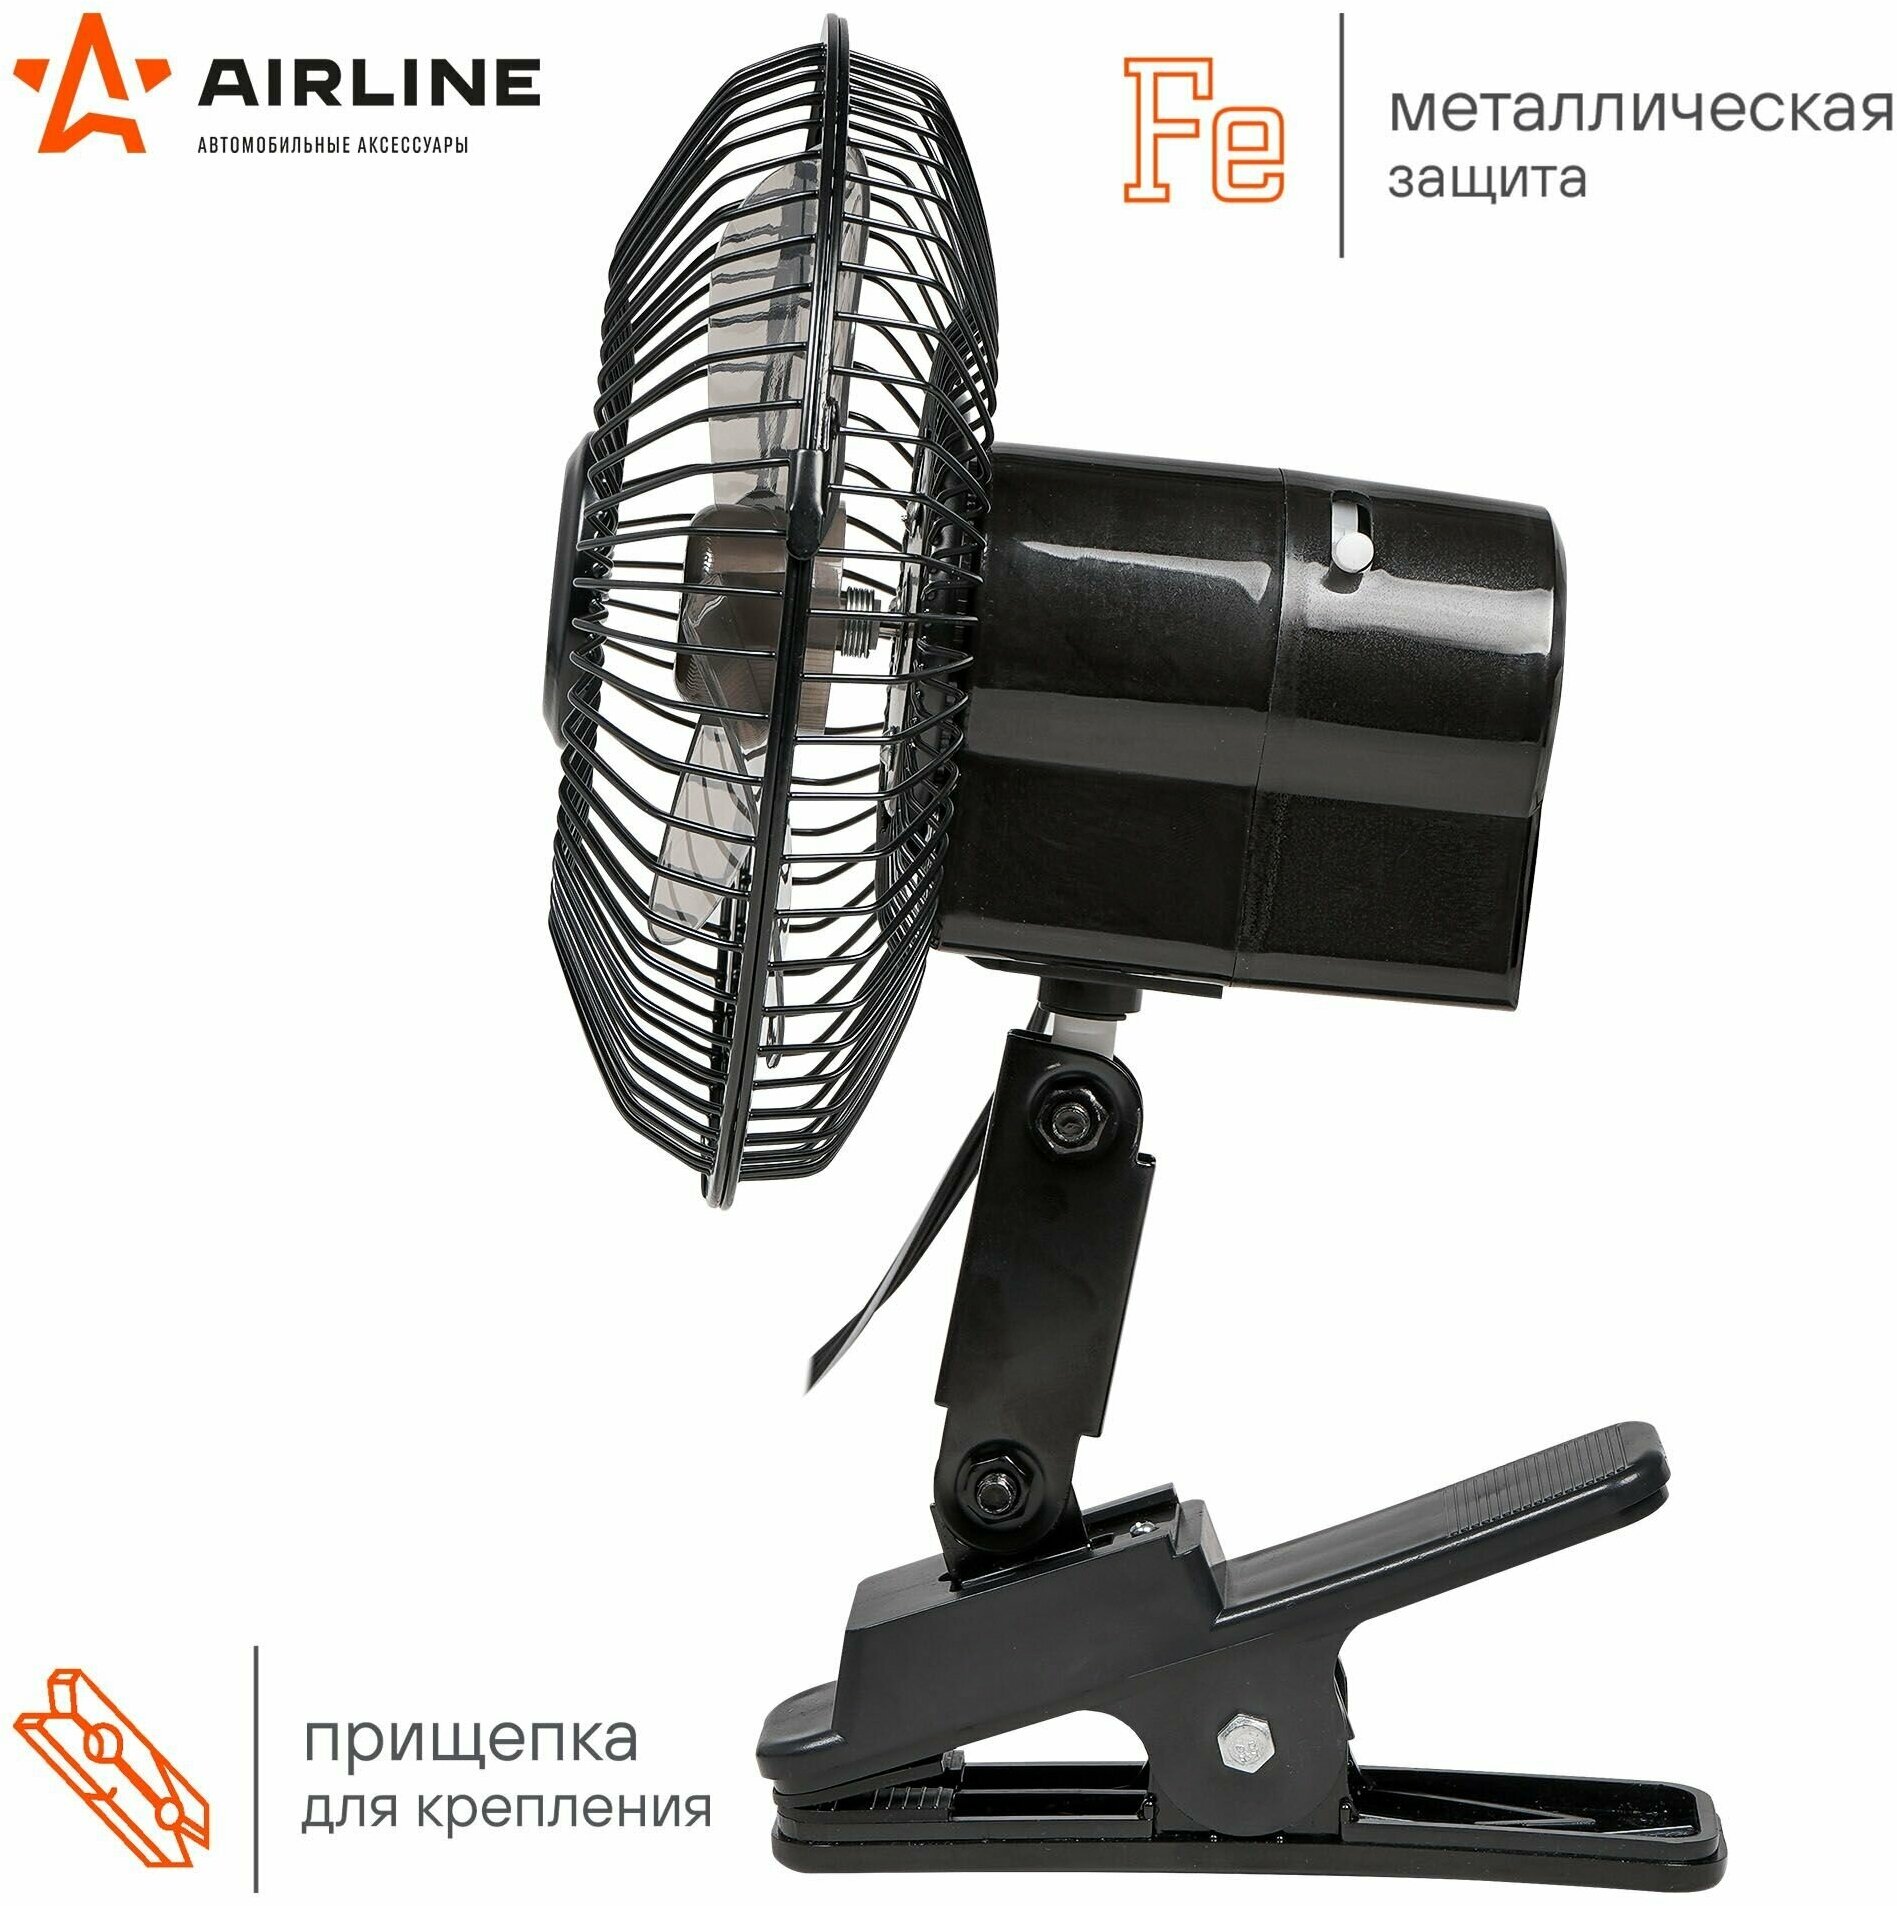 Вентилятор автомобильный 12V 15см (металл) с автоповоротом на прищепке (Airline)